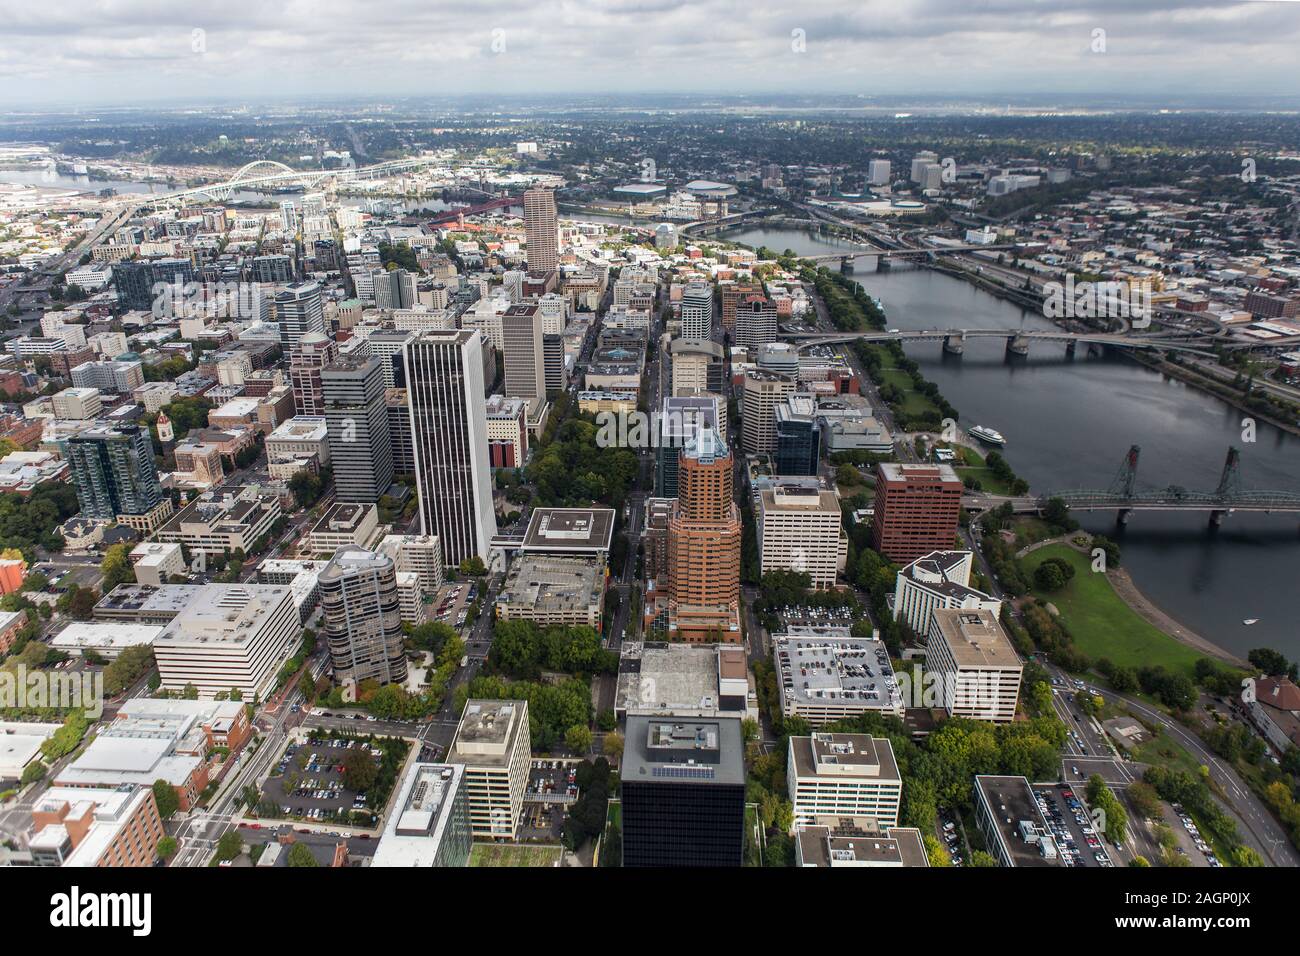 Vista aerea di edifici, ponti, le torri, le strade e il fiume Williamette nel centro di Portland, Oregon, Stati Uniti d'America. Foto Stock